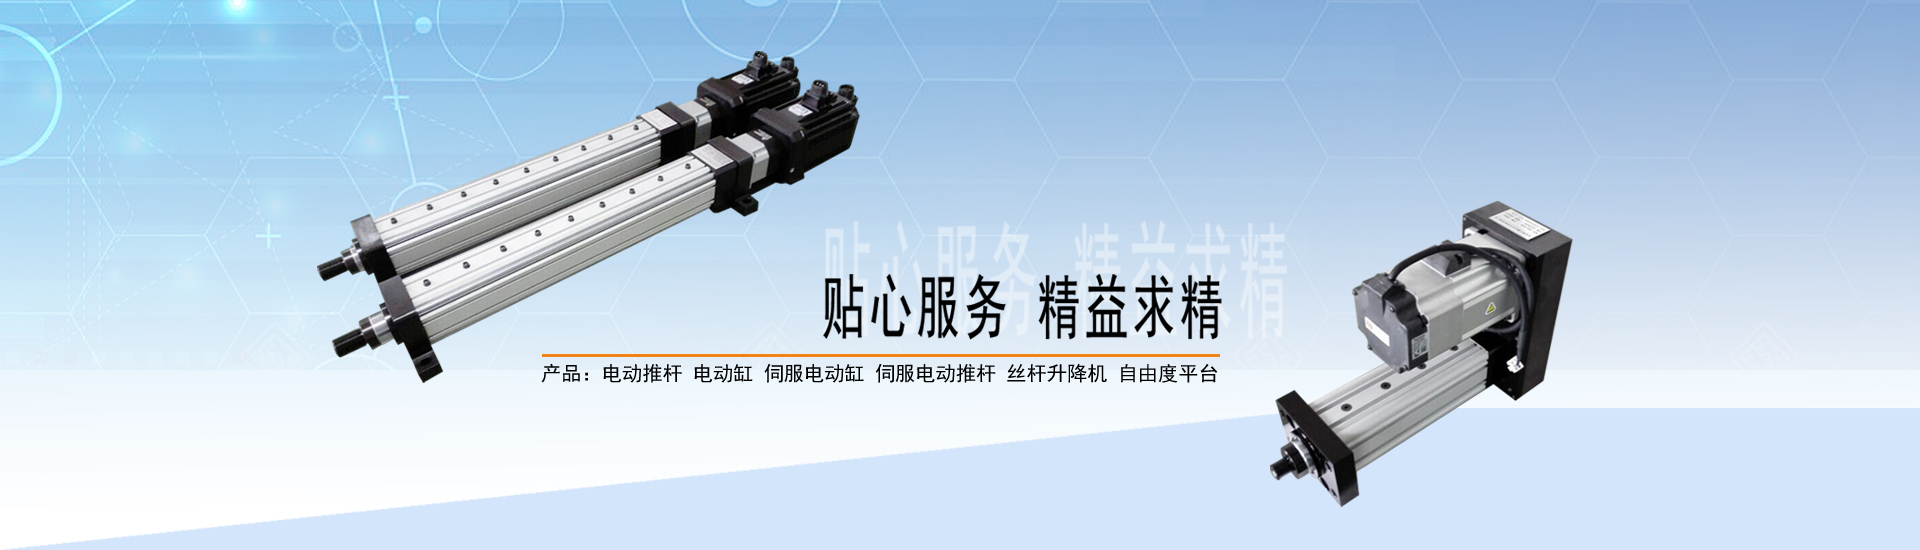 关于当前产品248cc永利集团官网线路·(中国)官方网站的成功案例等相关图片